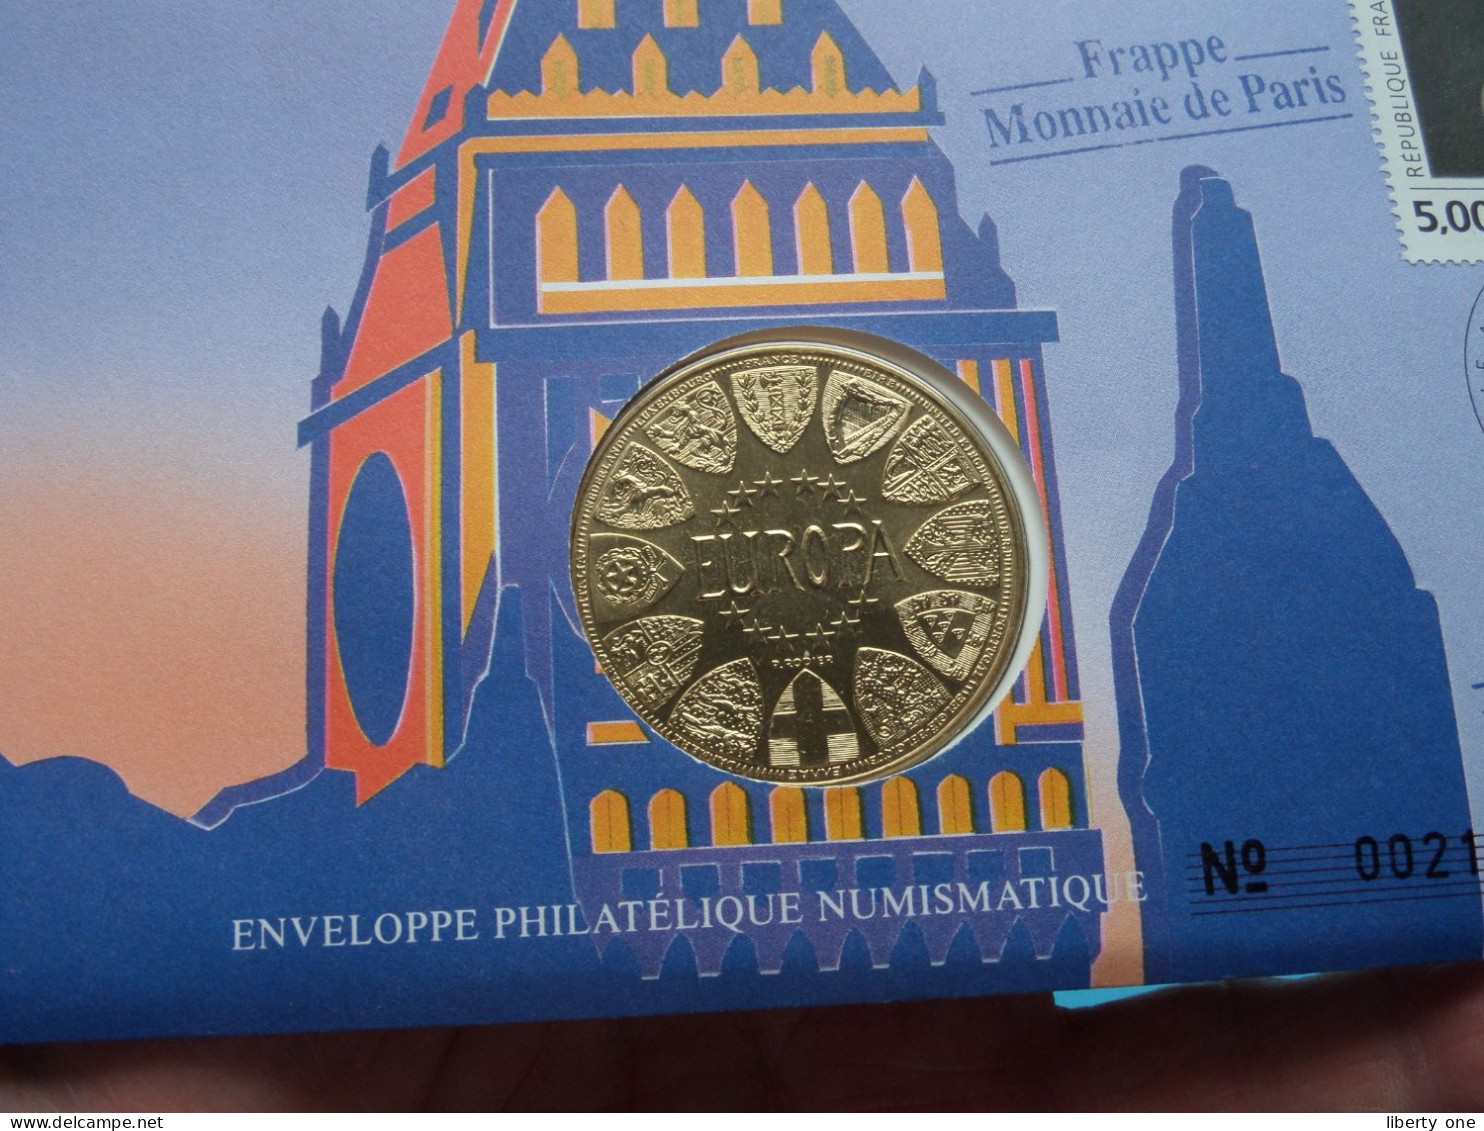 EUROPA - GRANDE BRETAGNE ( Voir Scans ) Enveloppe Numismatique Monnaie De Paris N° 00219 > 1990 > Numislettre ! - Souvenirmunten (elongated Coins)